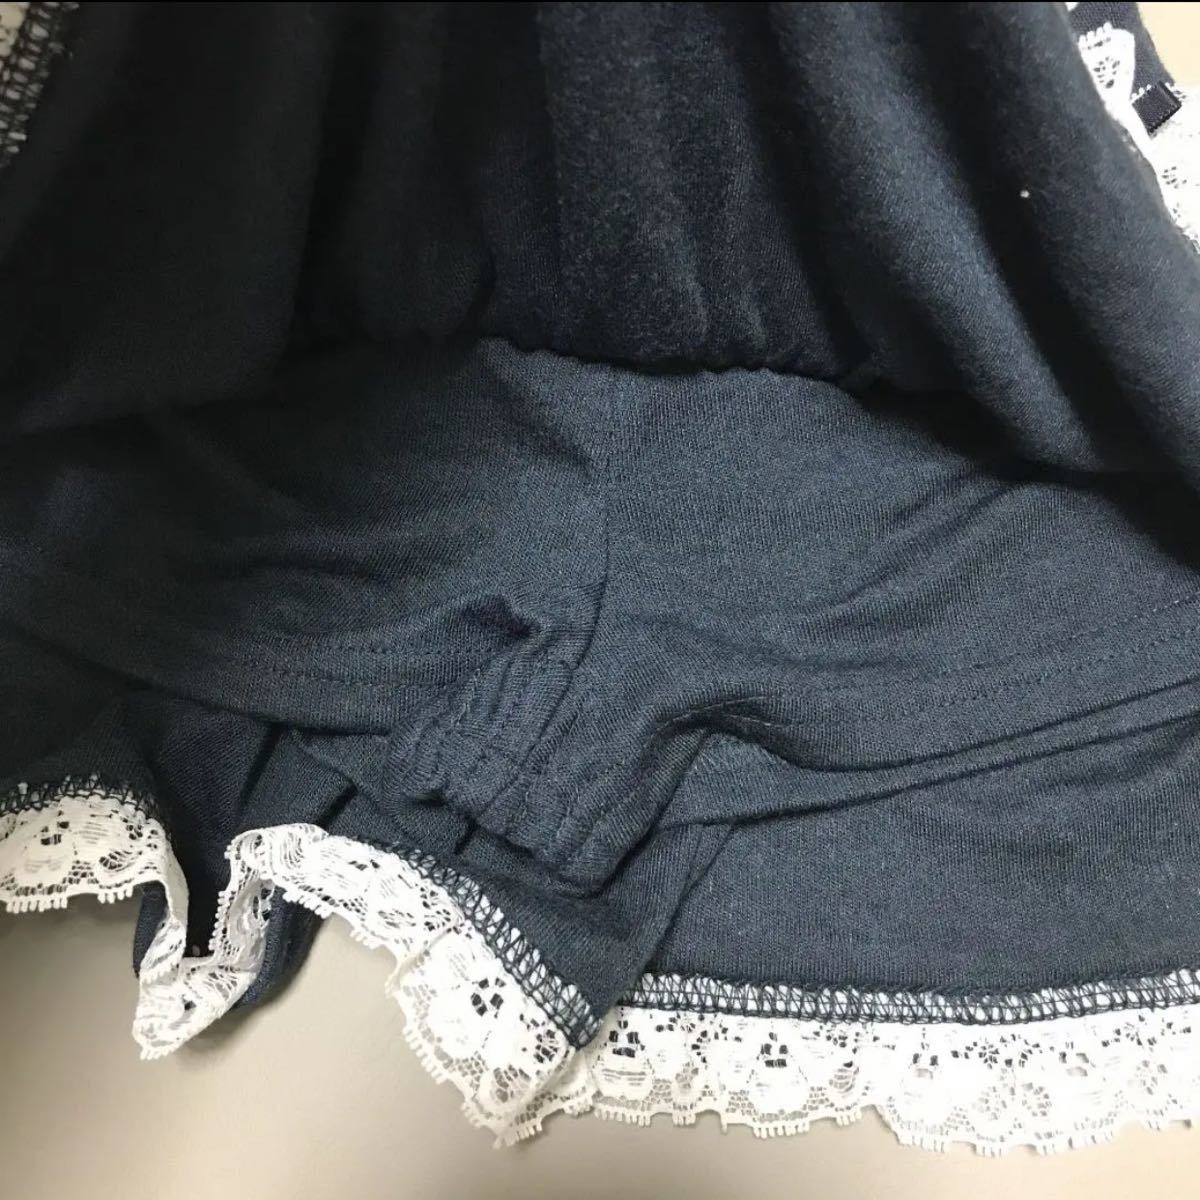 104cm マザウェイズ スカッツ スカパン 女の子 スカート さくらんぼ フォーマル パンツ 100cm 新品 未使用 タグ付き